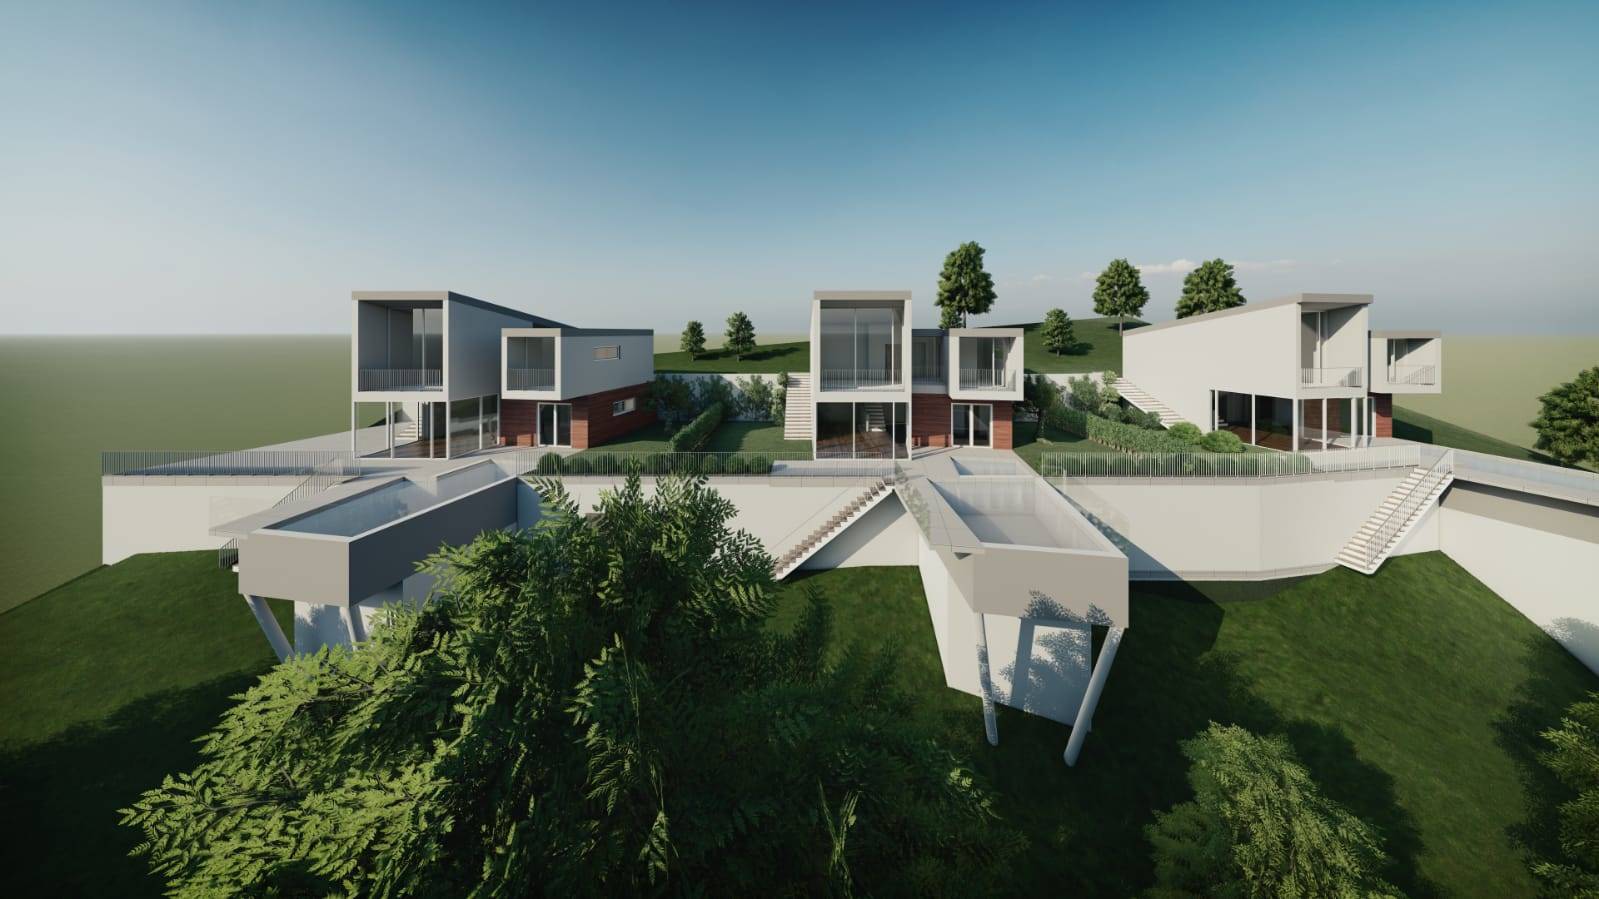 Proponiamo a Soiano del Lago nuove ville moderne con piscina con consegna prevista entro fine 2022 in una lottizzazione di tre unità. Le ville sono 